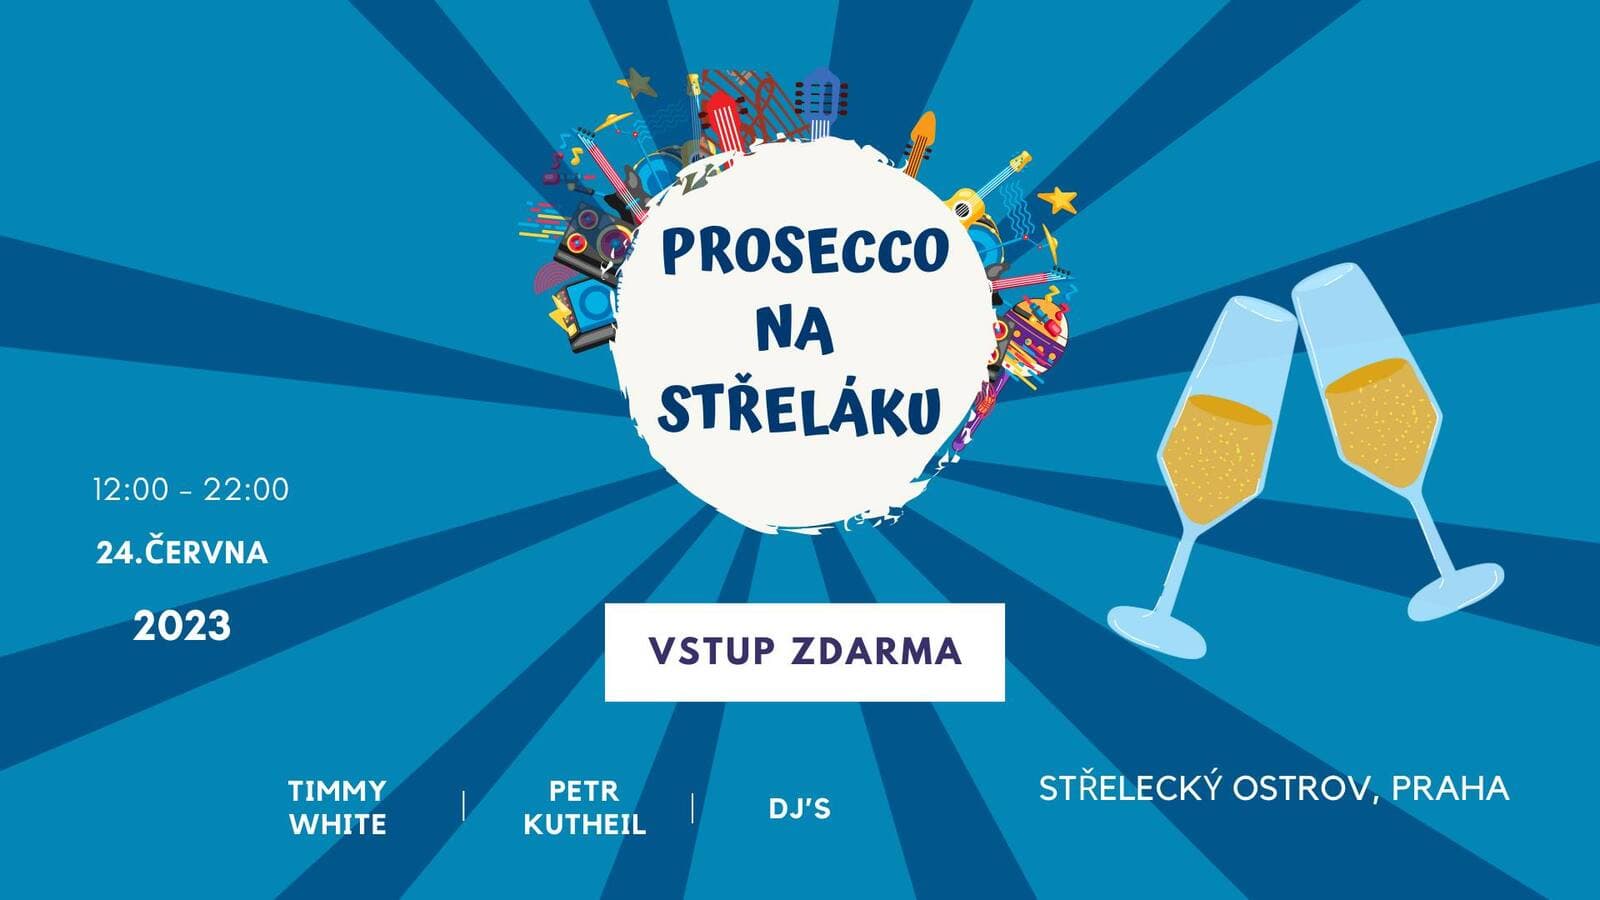 24 июня в Праге пройдет фестиваль Prosecco na Střeláku